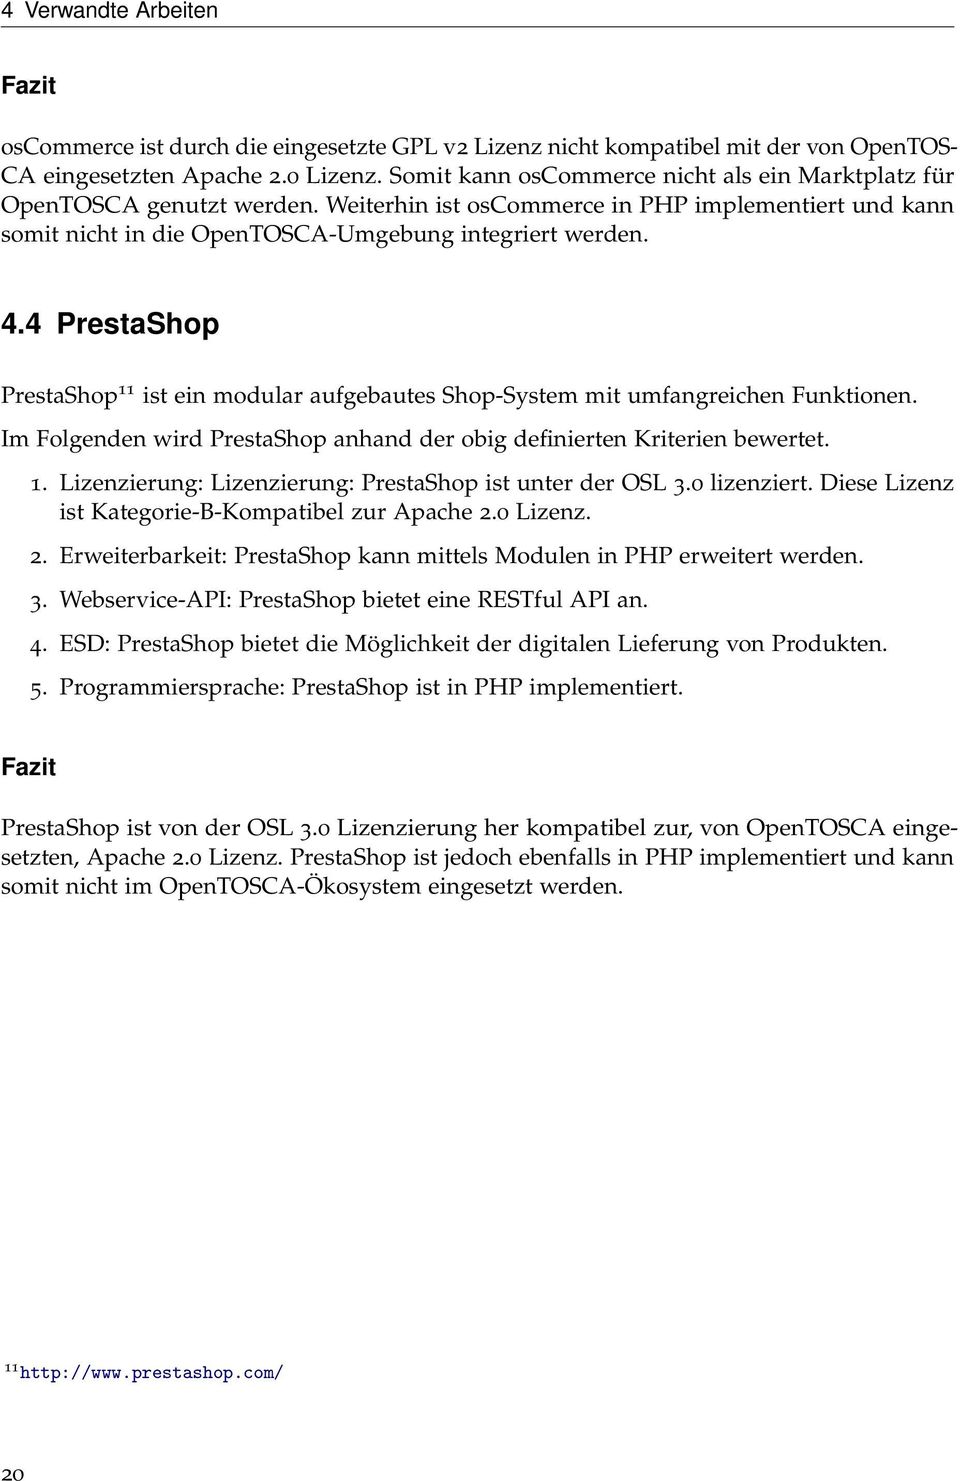 4 PrestaShop PrestaShop 11 ist ein modular aufgebautes Shop-System mit umfangreichen Funktionen. Im Folgenden wird PrestaShop anhand der obig definierten Kriterien bewertet. 1. Lizenzierung: Lizenzierung: PrestaShop ist unter der OSL 3.